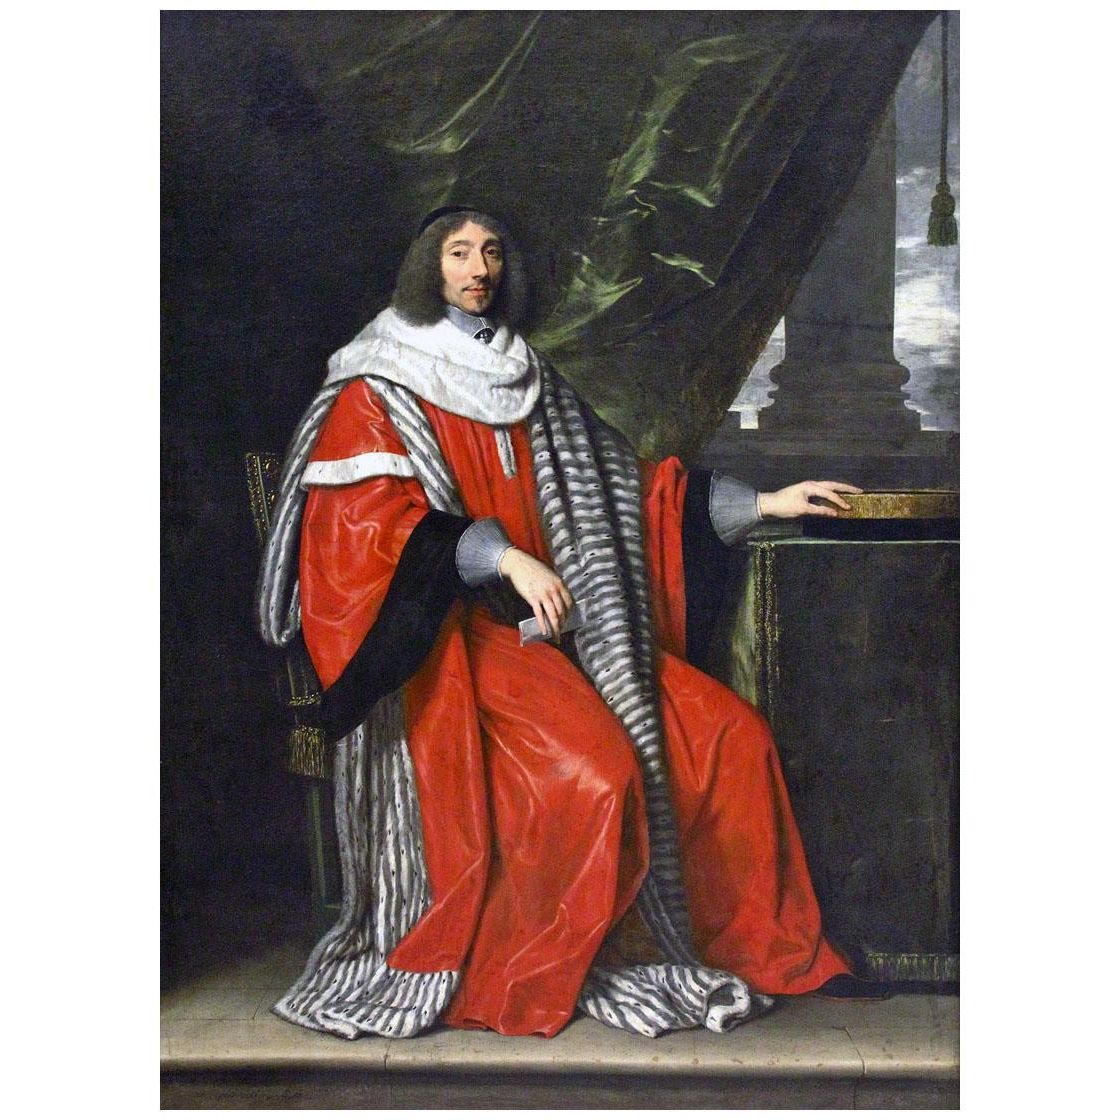 Philippe de Champaigne. Jean-Antoin de Mesmes. 1653. Louvre Paris